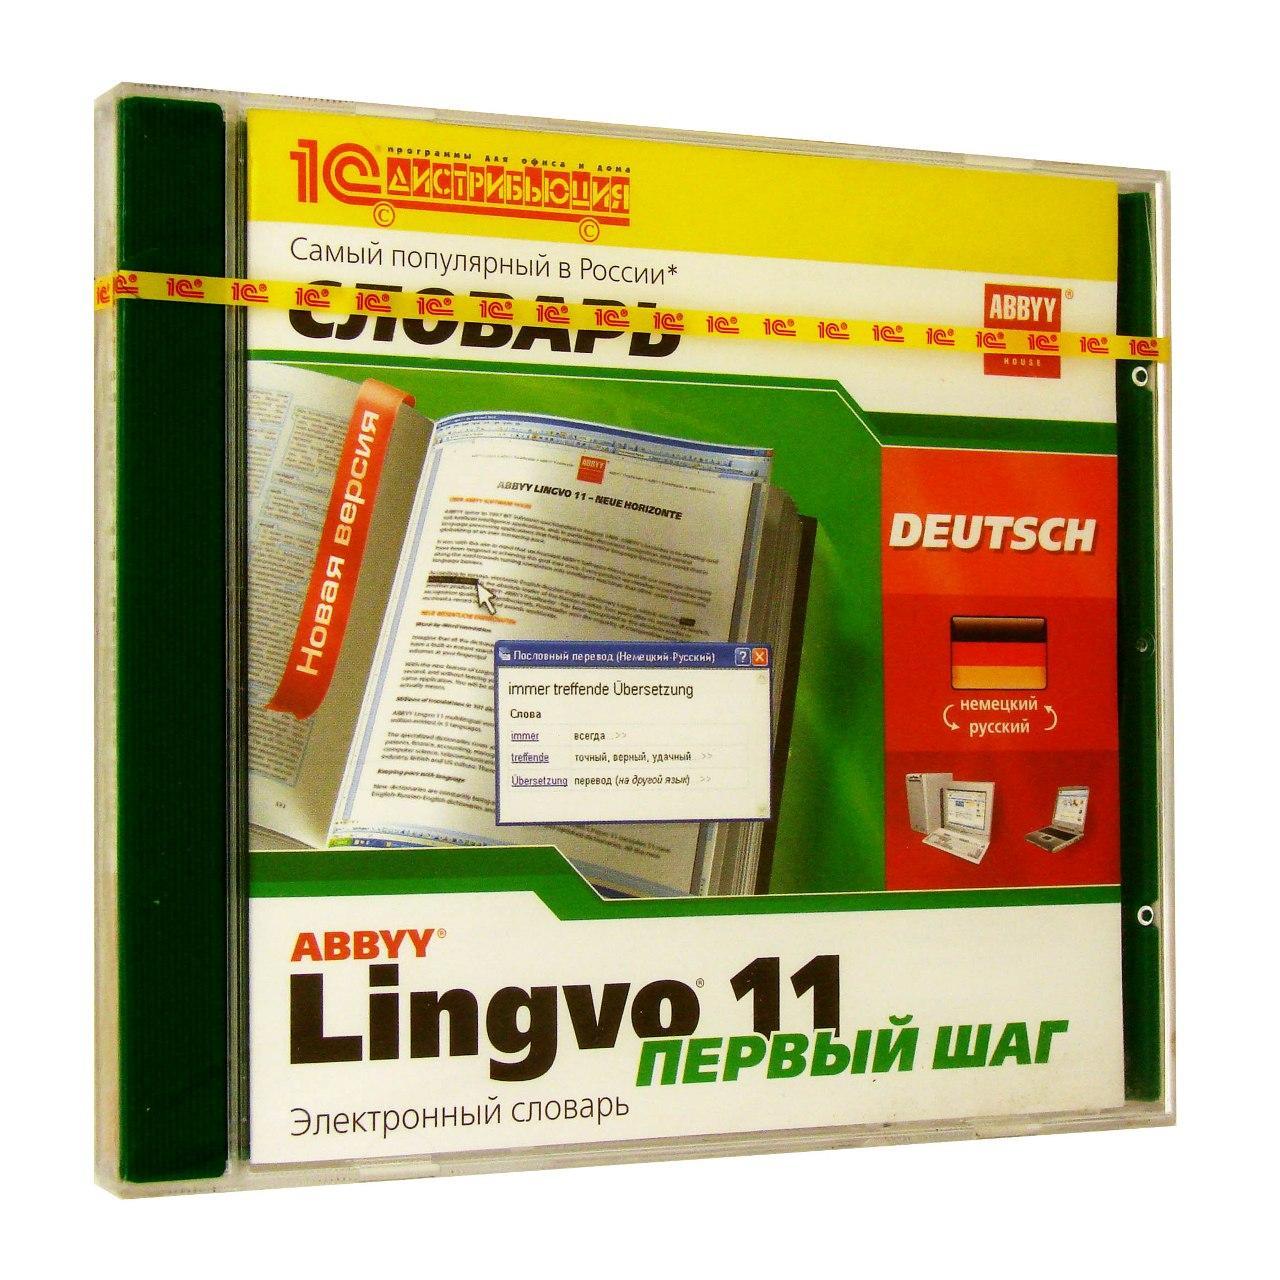 Компьютерный компакт-диск ABBYY Lingvo 11 Первый Шаг De-Rus-De (PC), фирма "1С", 1CD